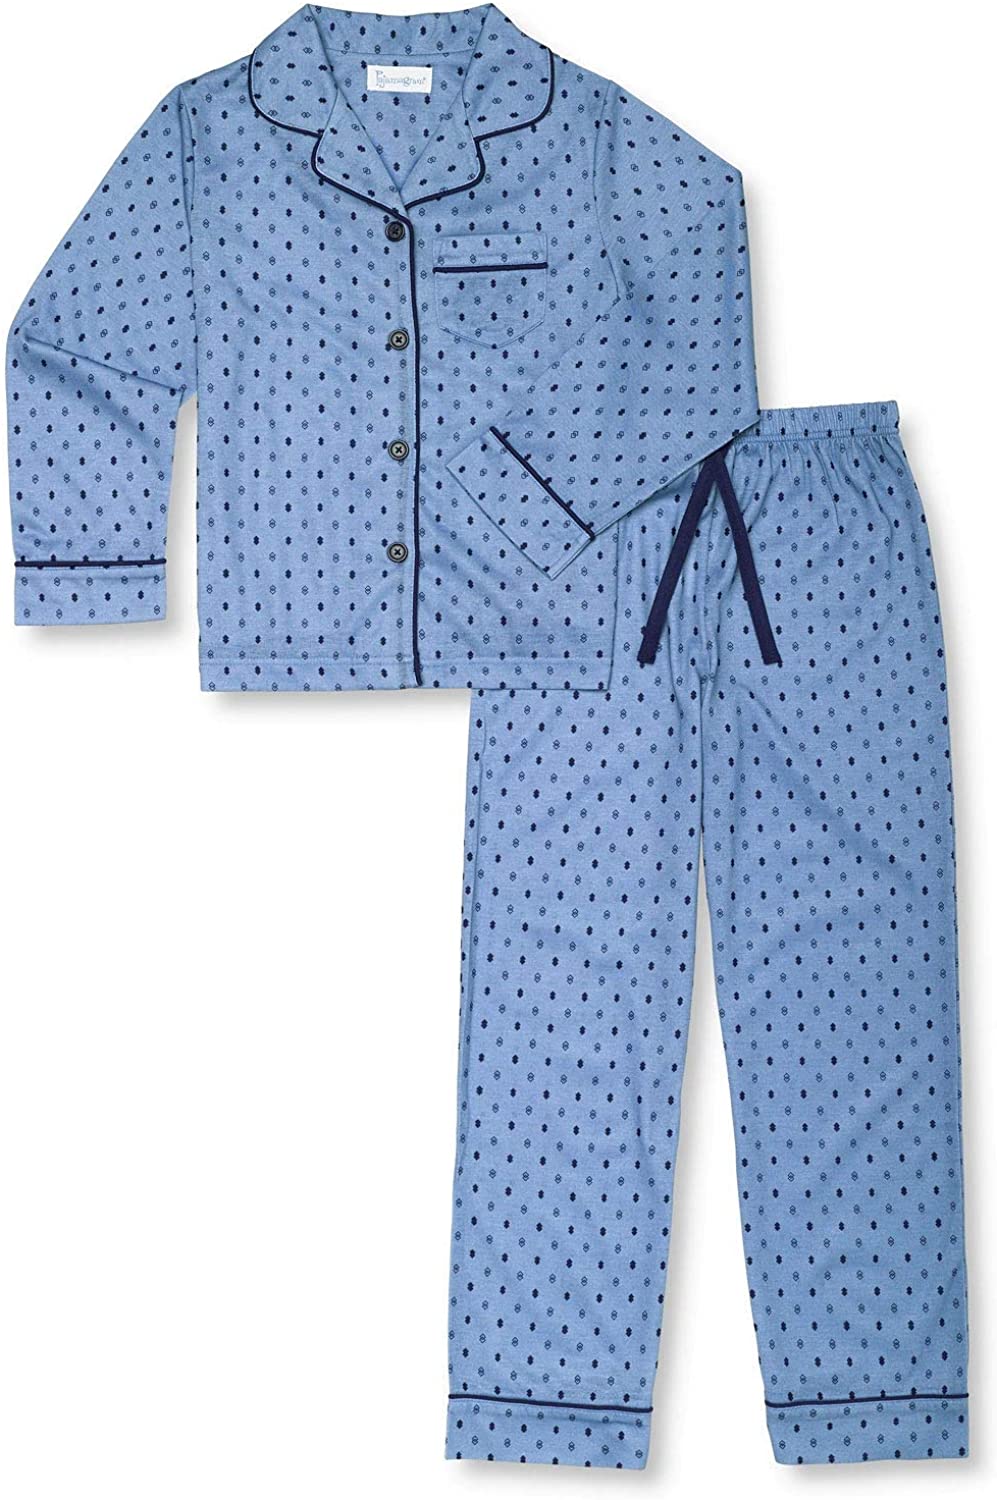 Kids Button Down Pajamas PajamaGram Pajamas for Kids